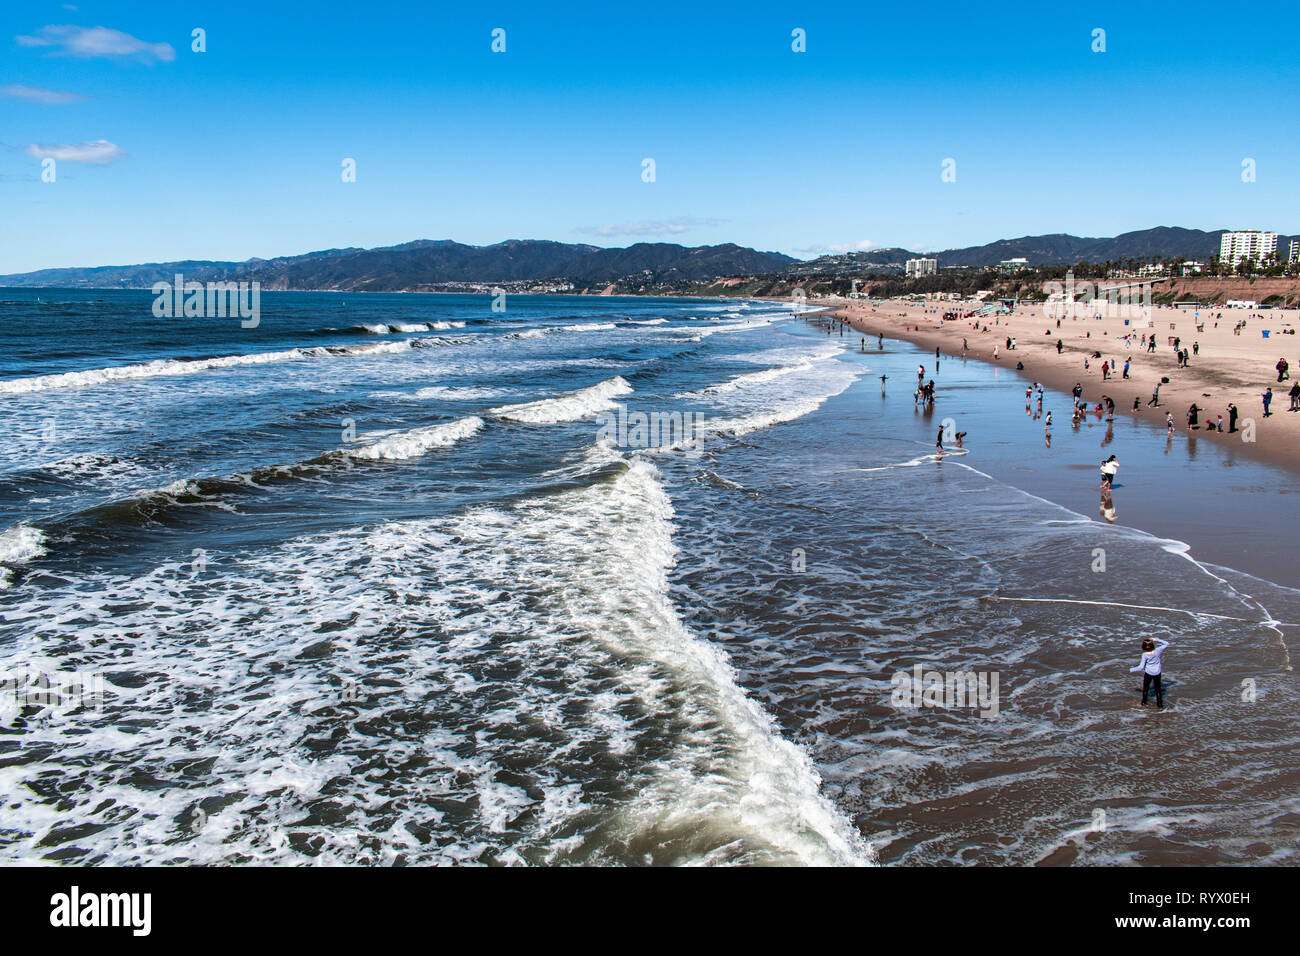 Les gens marcher, nager, bronzer, et de jouer à une plage de la Californie du Sud. Une chaude journée d'été sur le sable à la plage. Banque D'Images